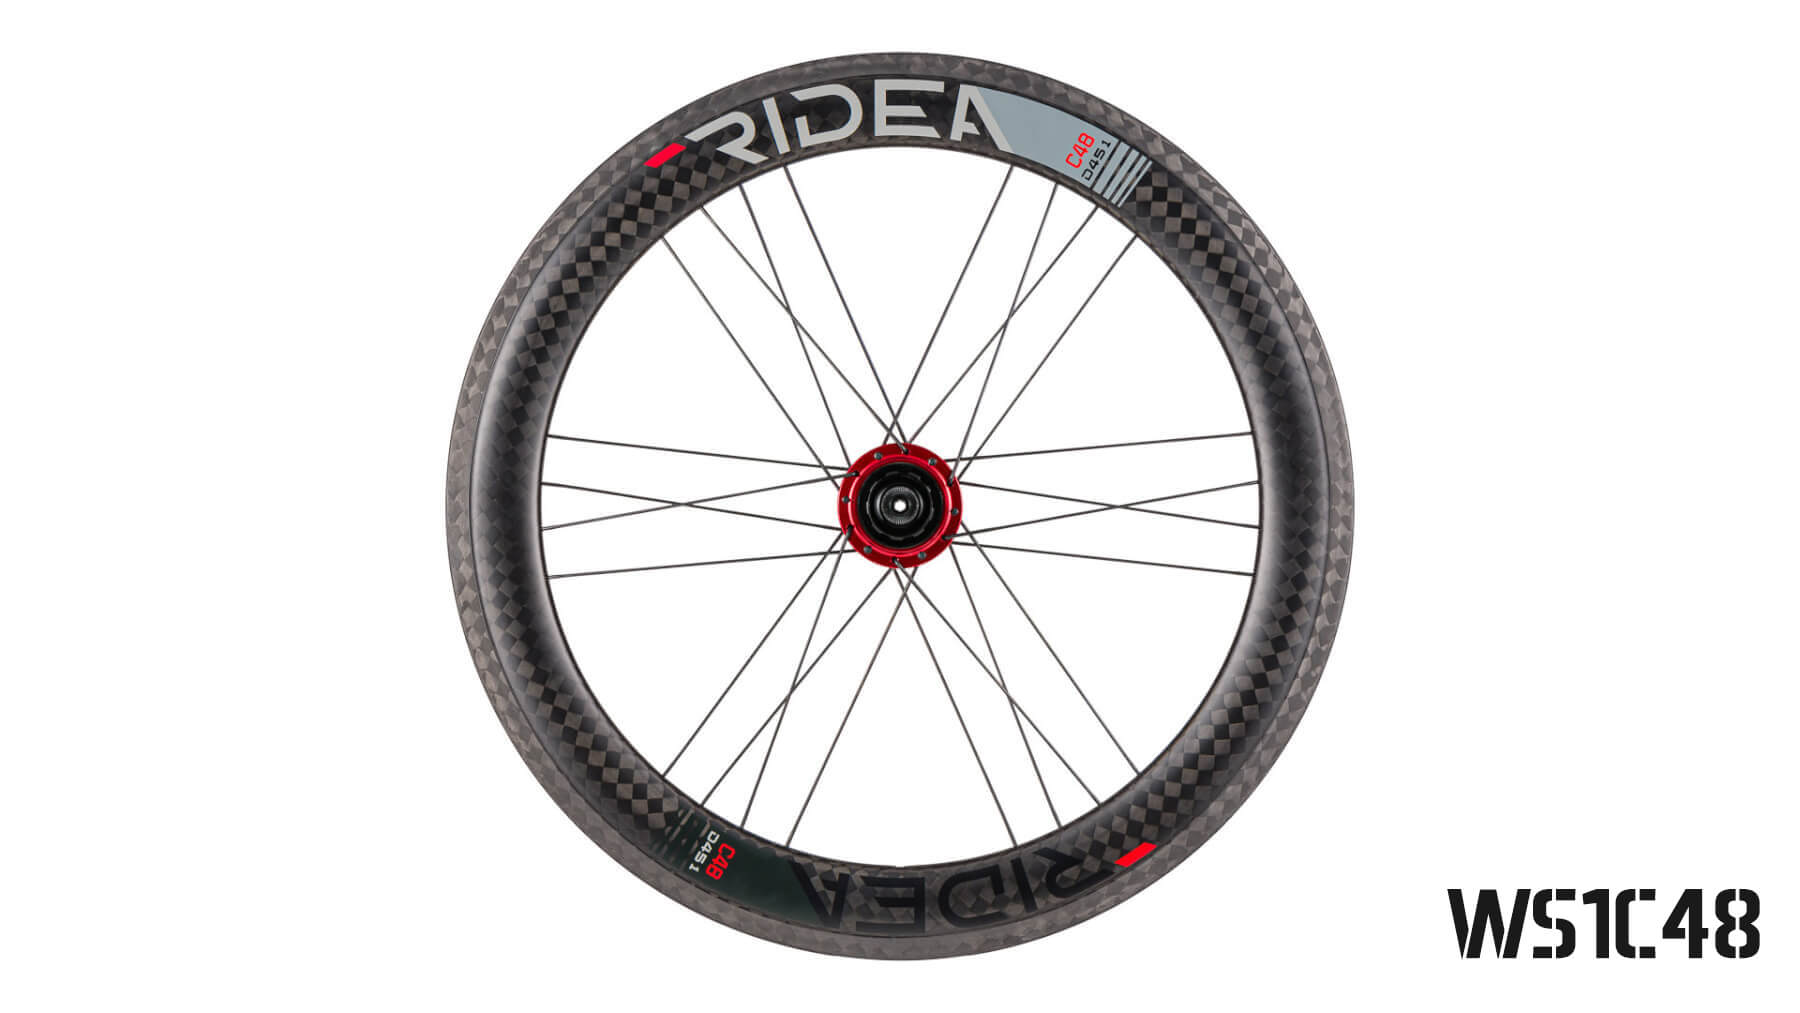 451 mm carbon wheels (Dahon)